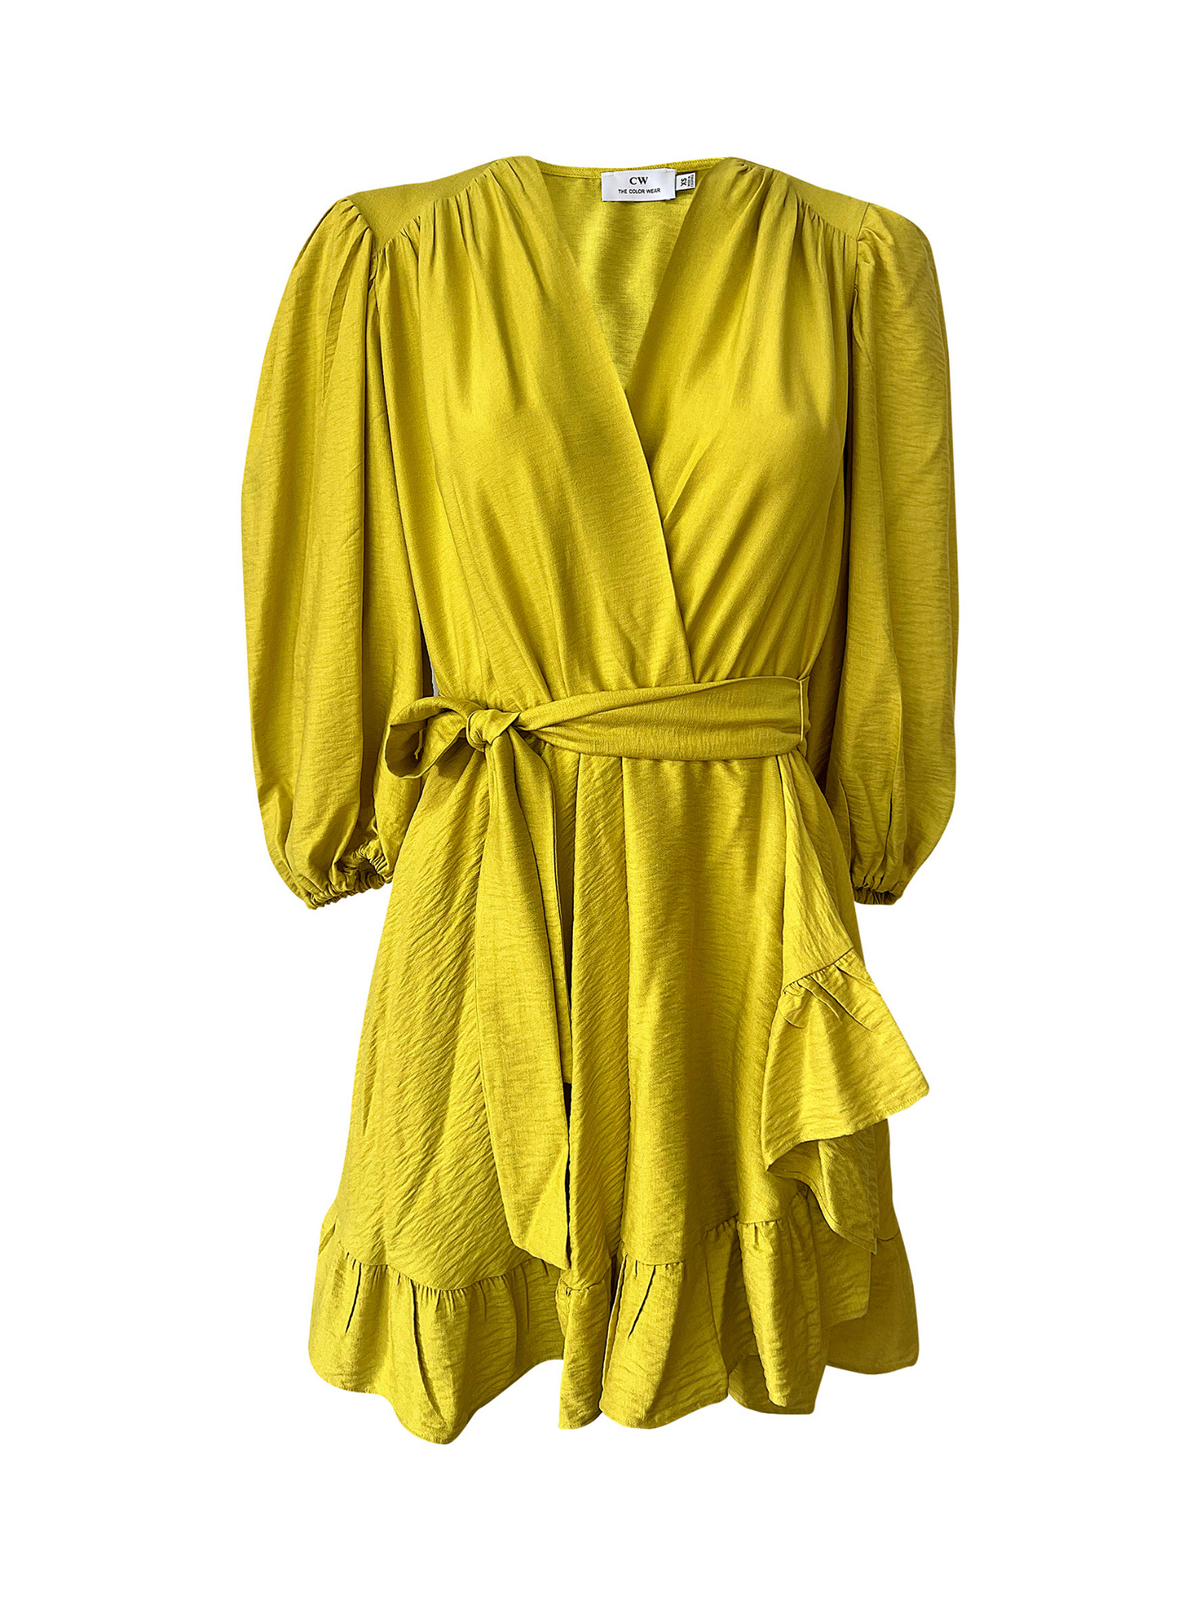 The Color Wear | Tienda Virtual | Vestidos | vestido Blinky